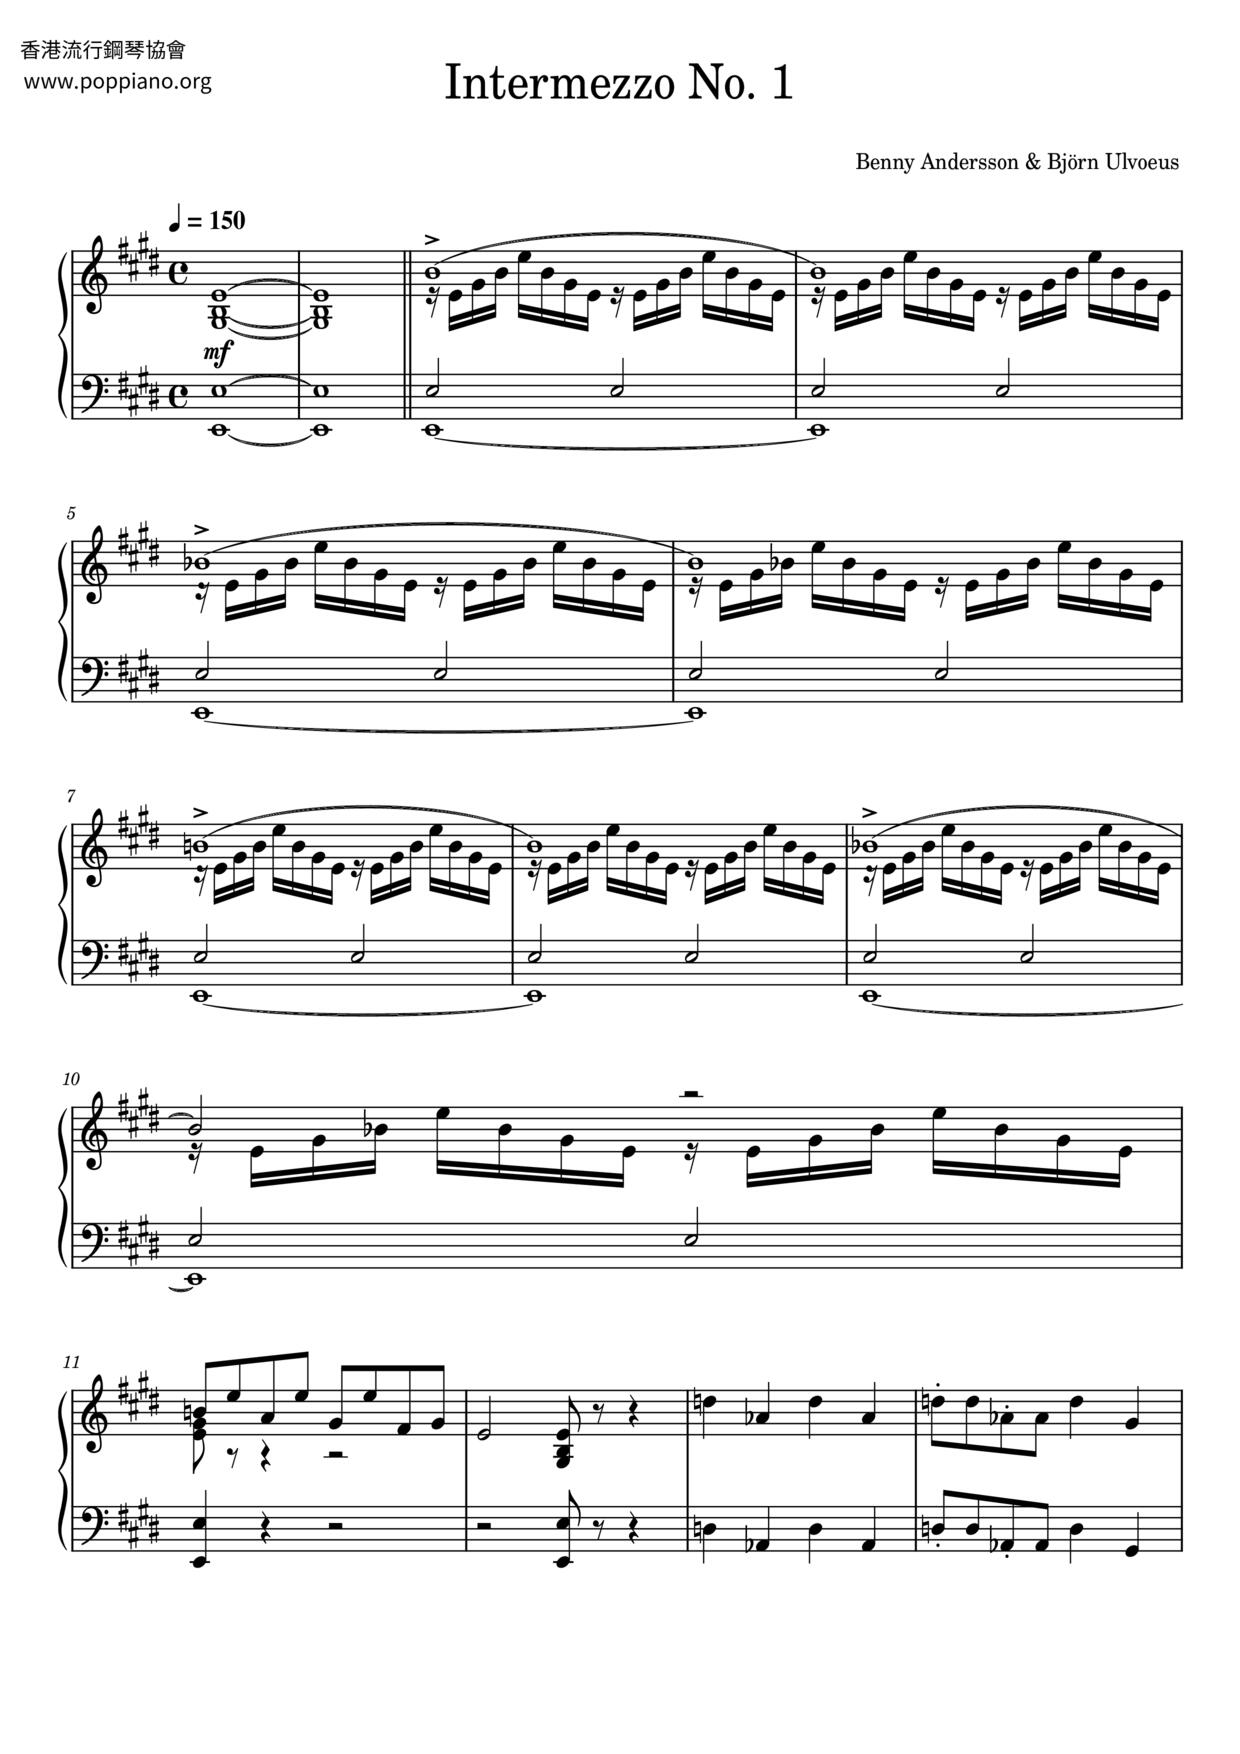 Intermezzo No. 1ピアノ譜